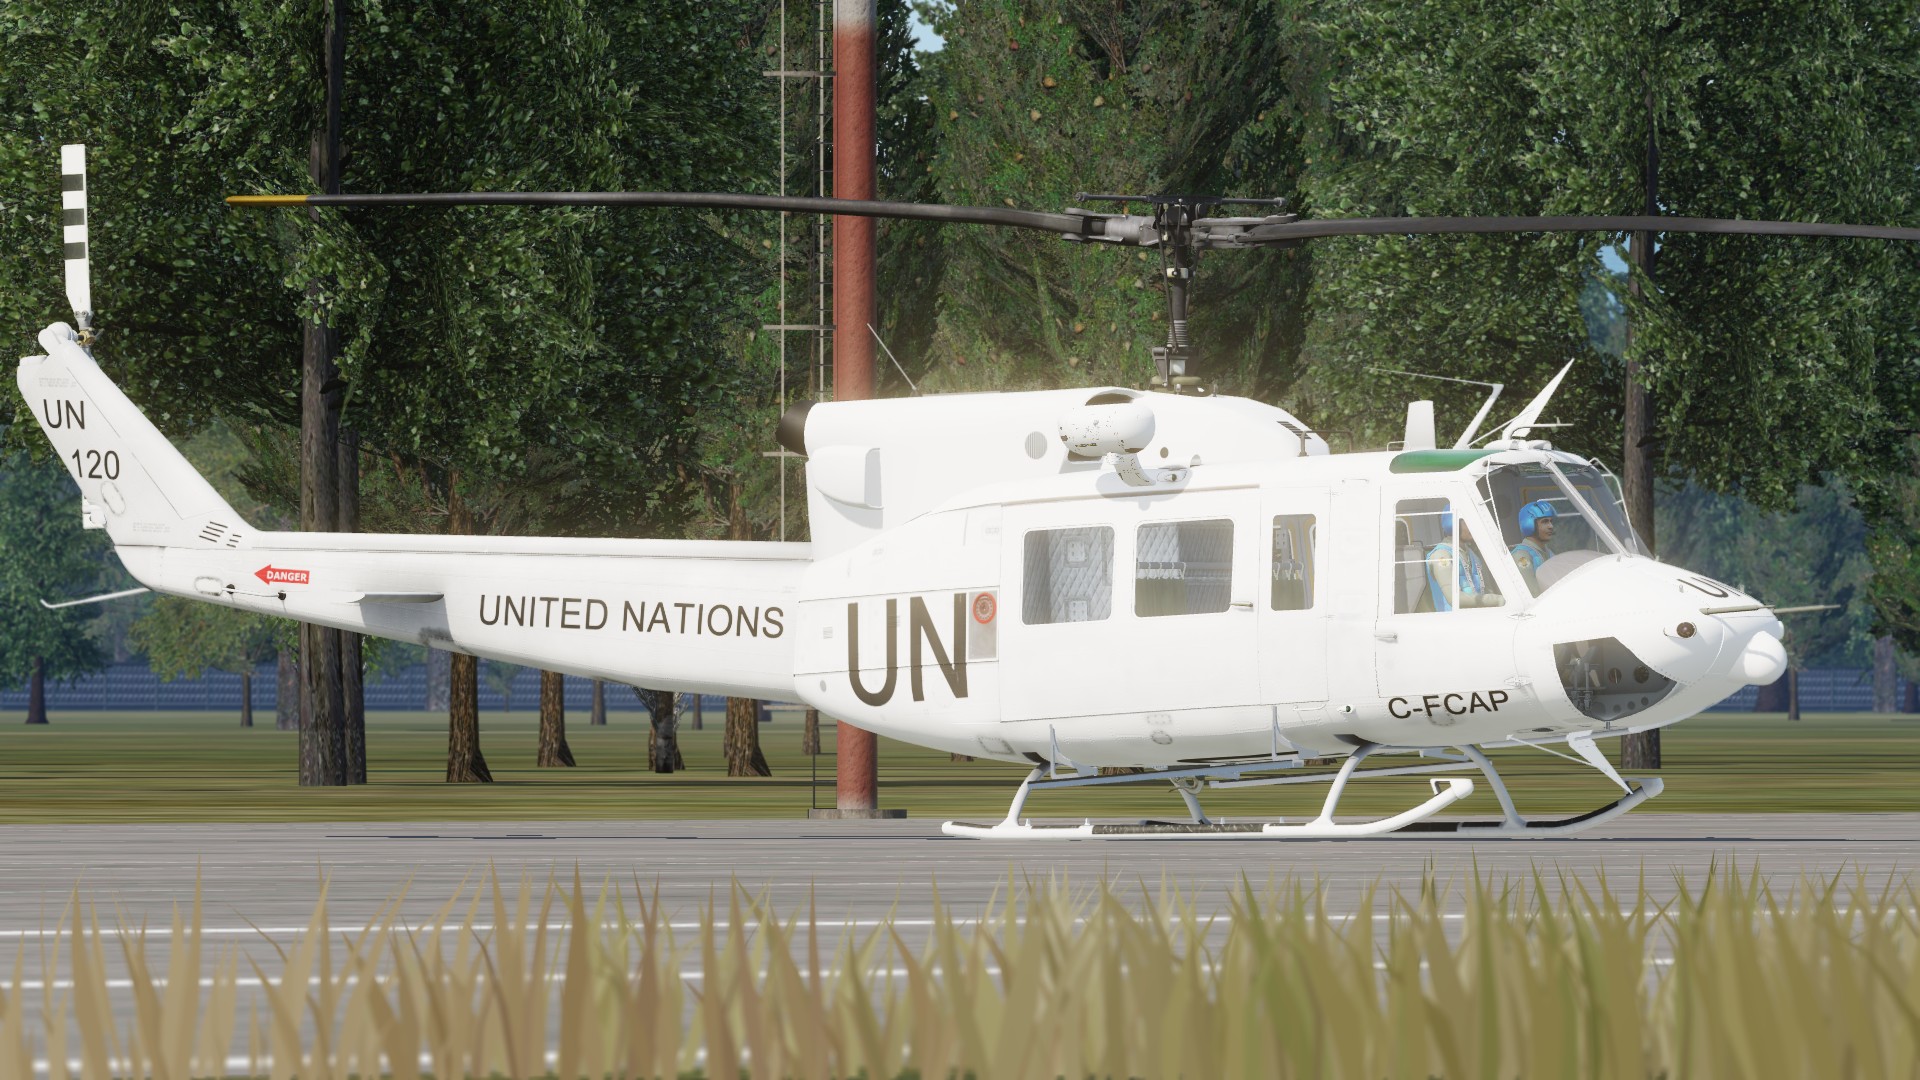 UH-1H - AB-212 UN liveries